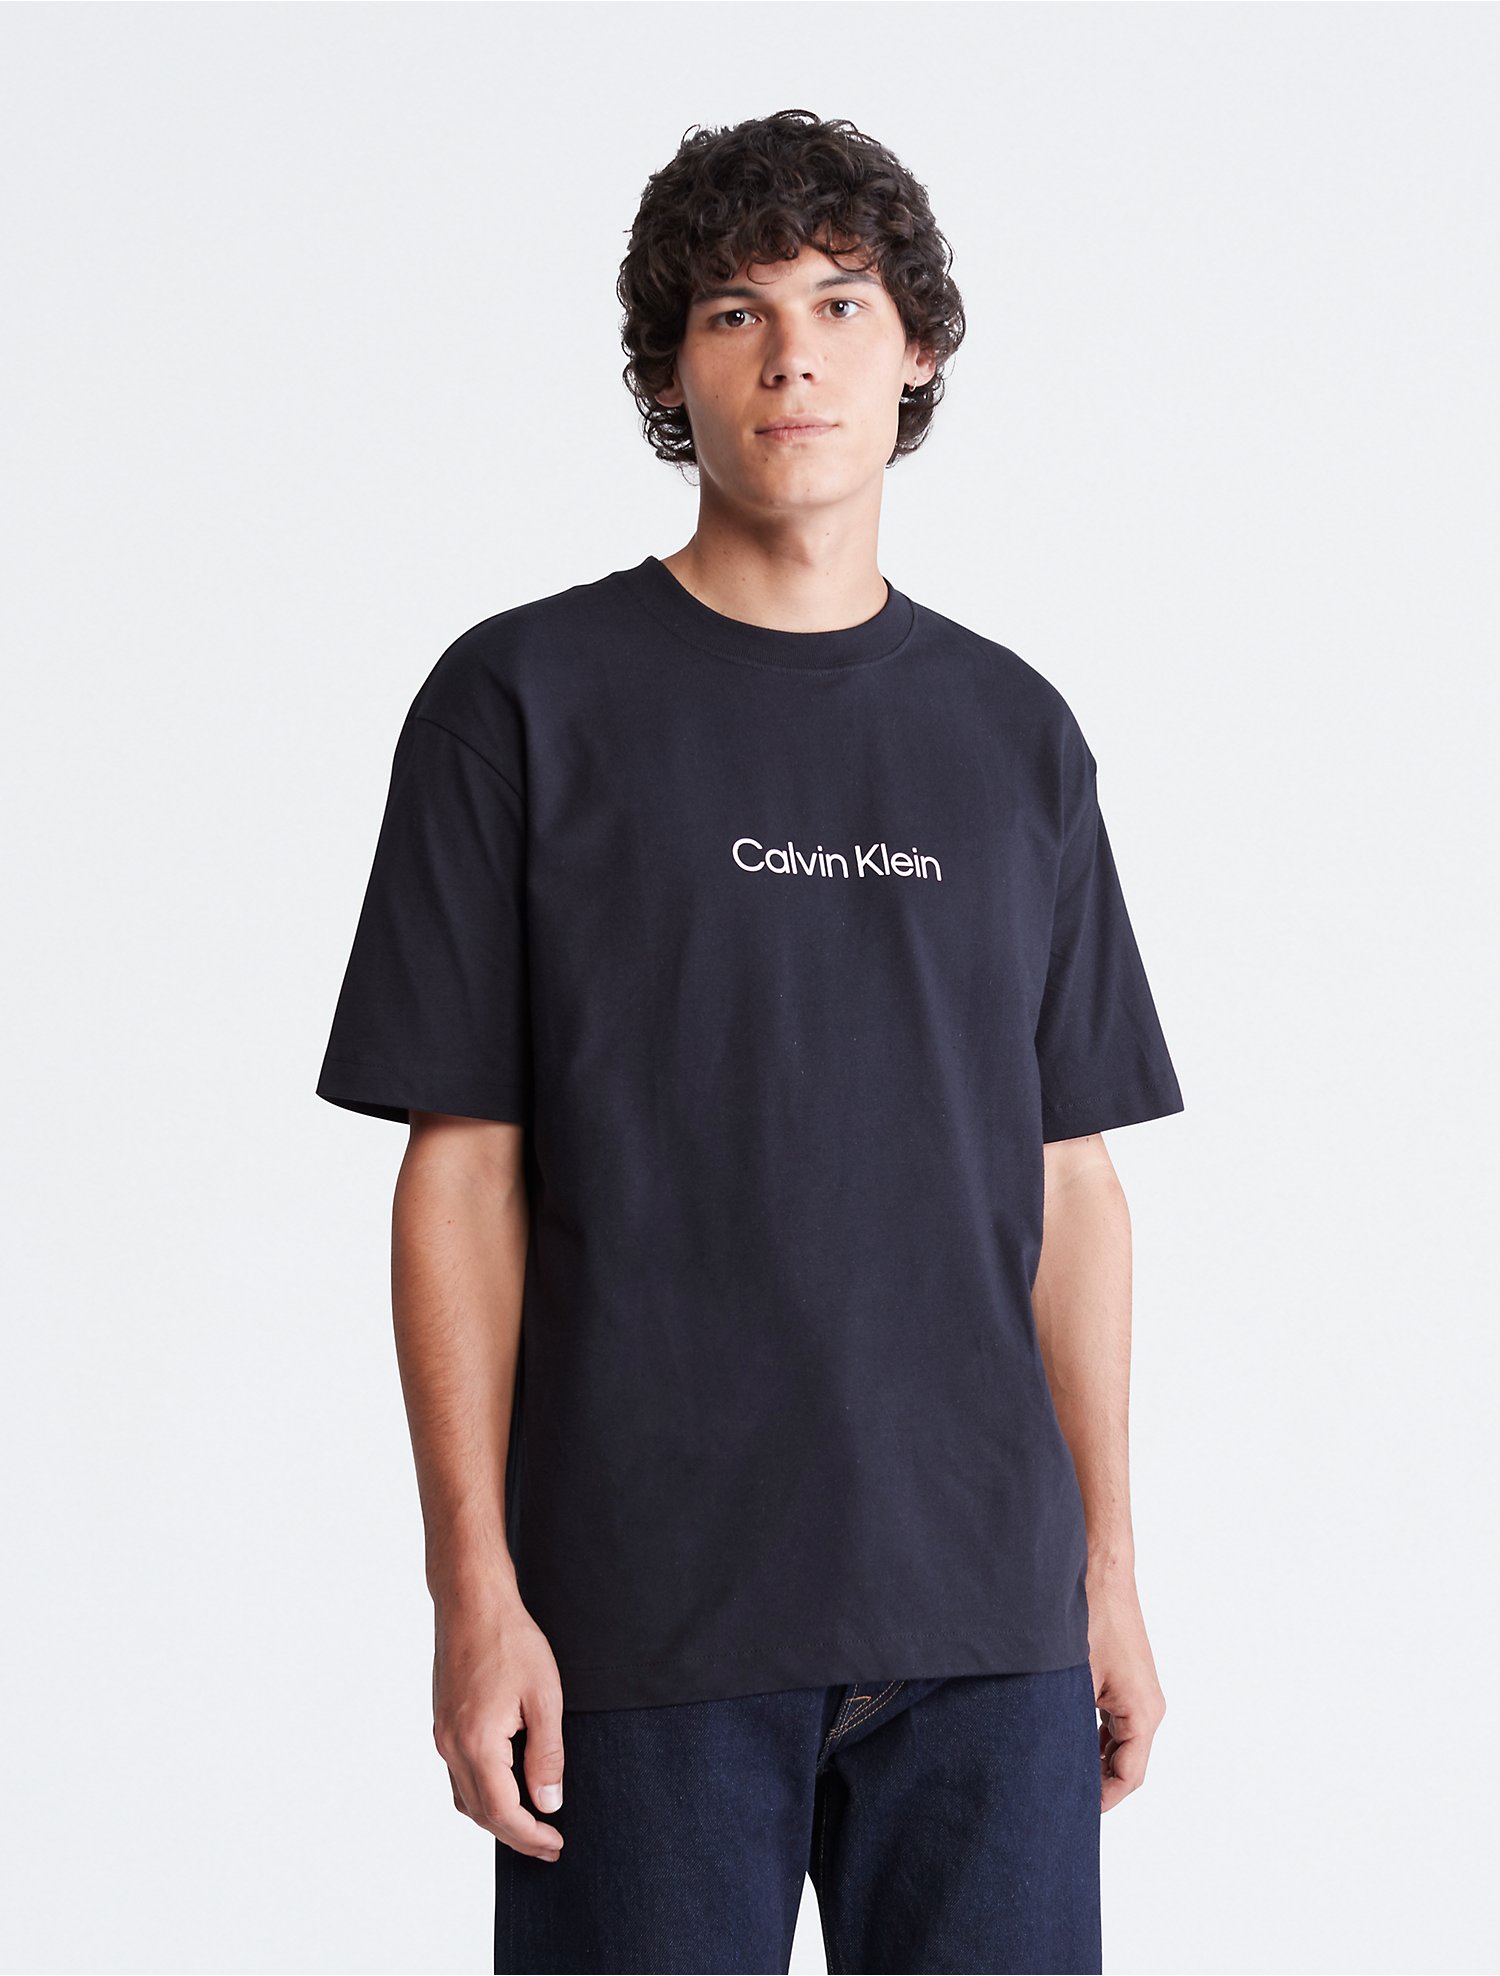 Introducir 31+ imagen calvin klein relaxed fit t shirt